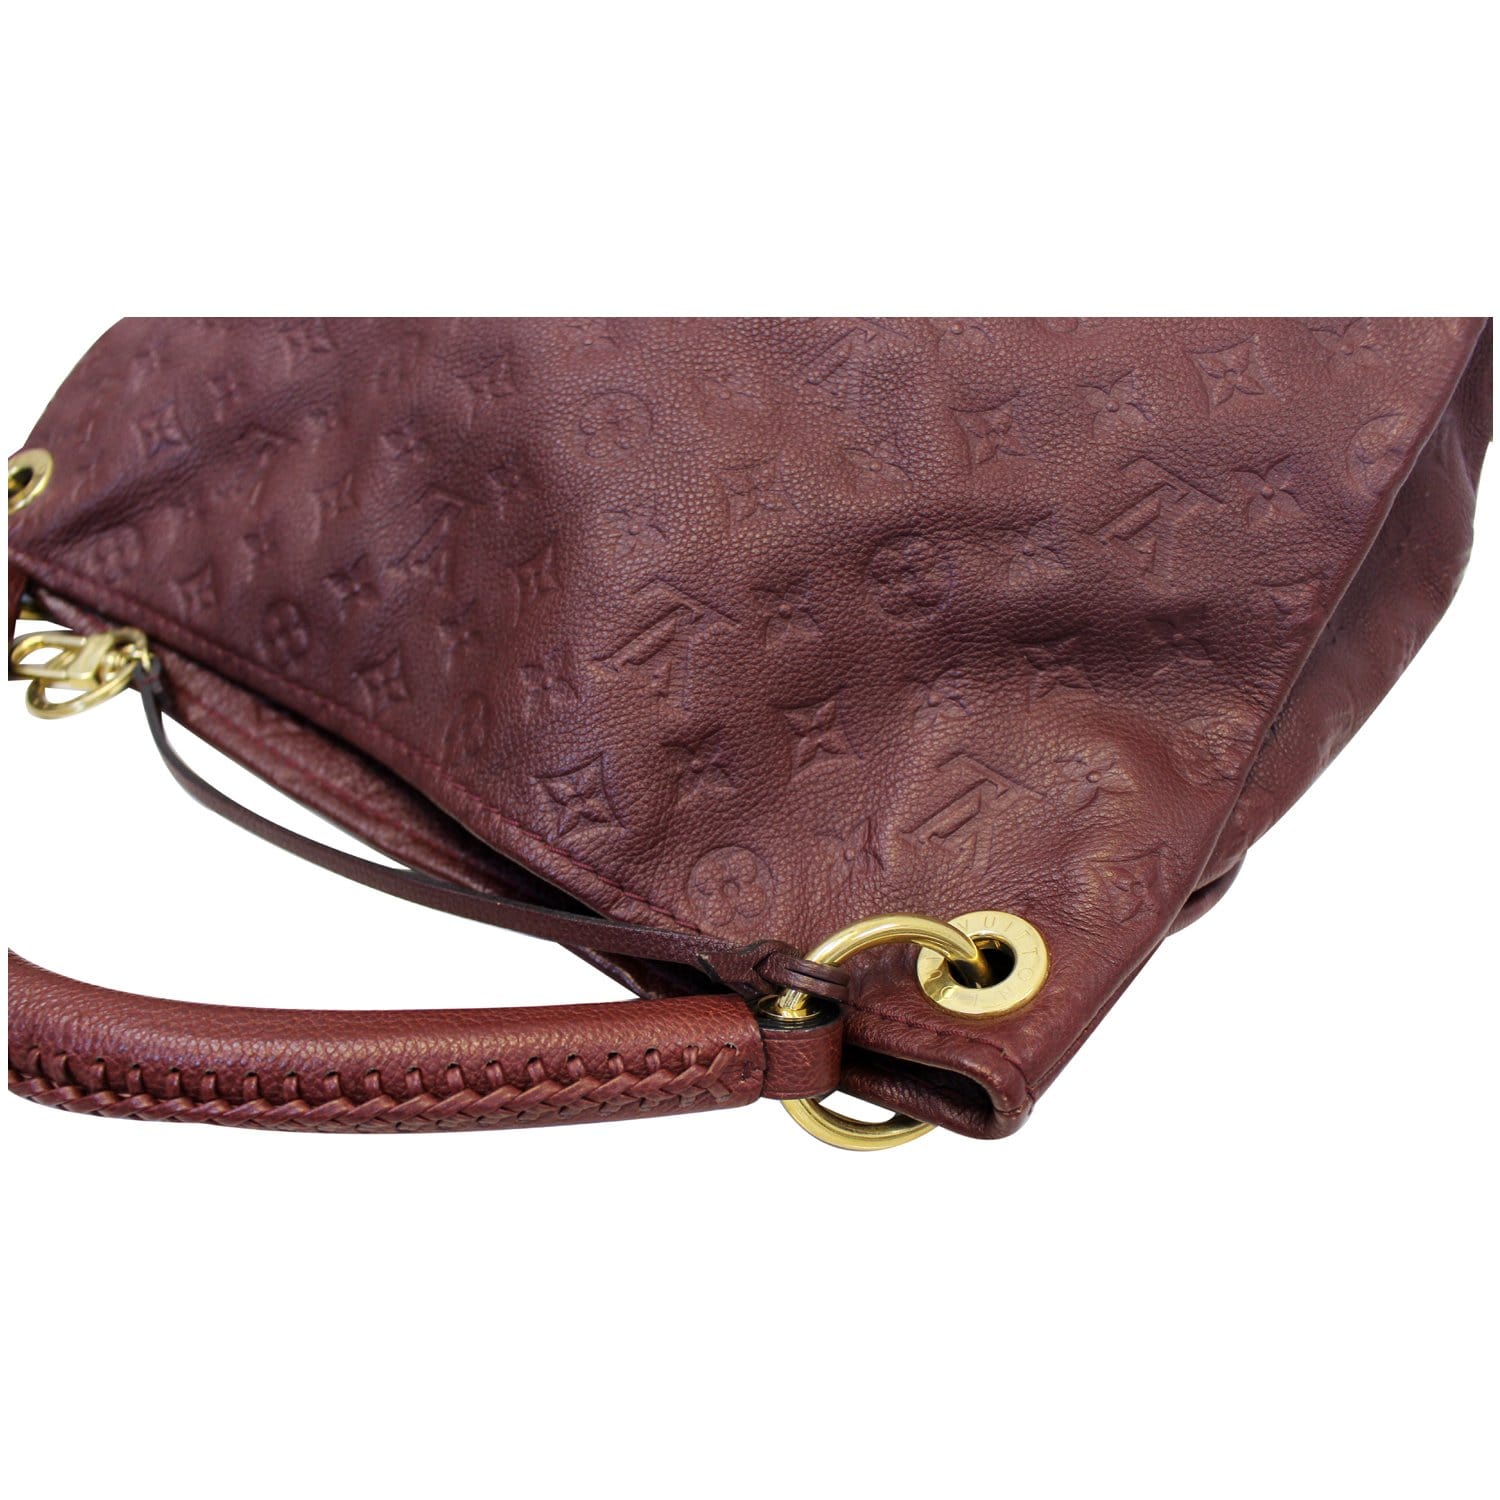 Louis Vuitton Artsy MM Monogram Shoulder Bag - Lv Artsy Bag